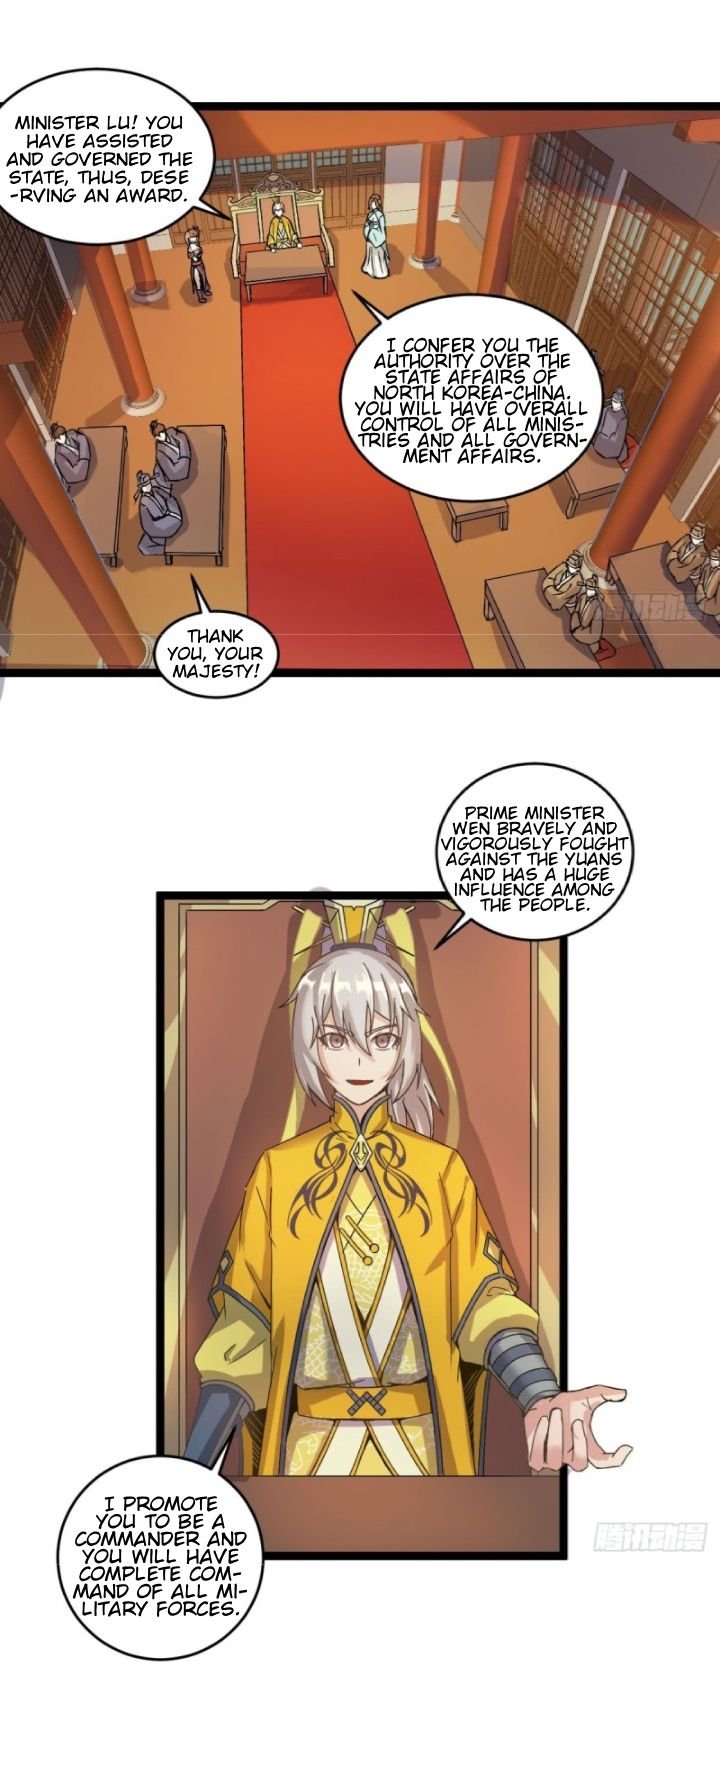 Reborn As King/emperor - Page 2